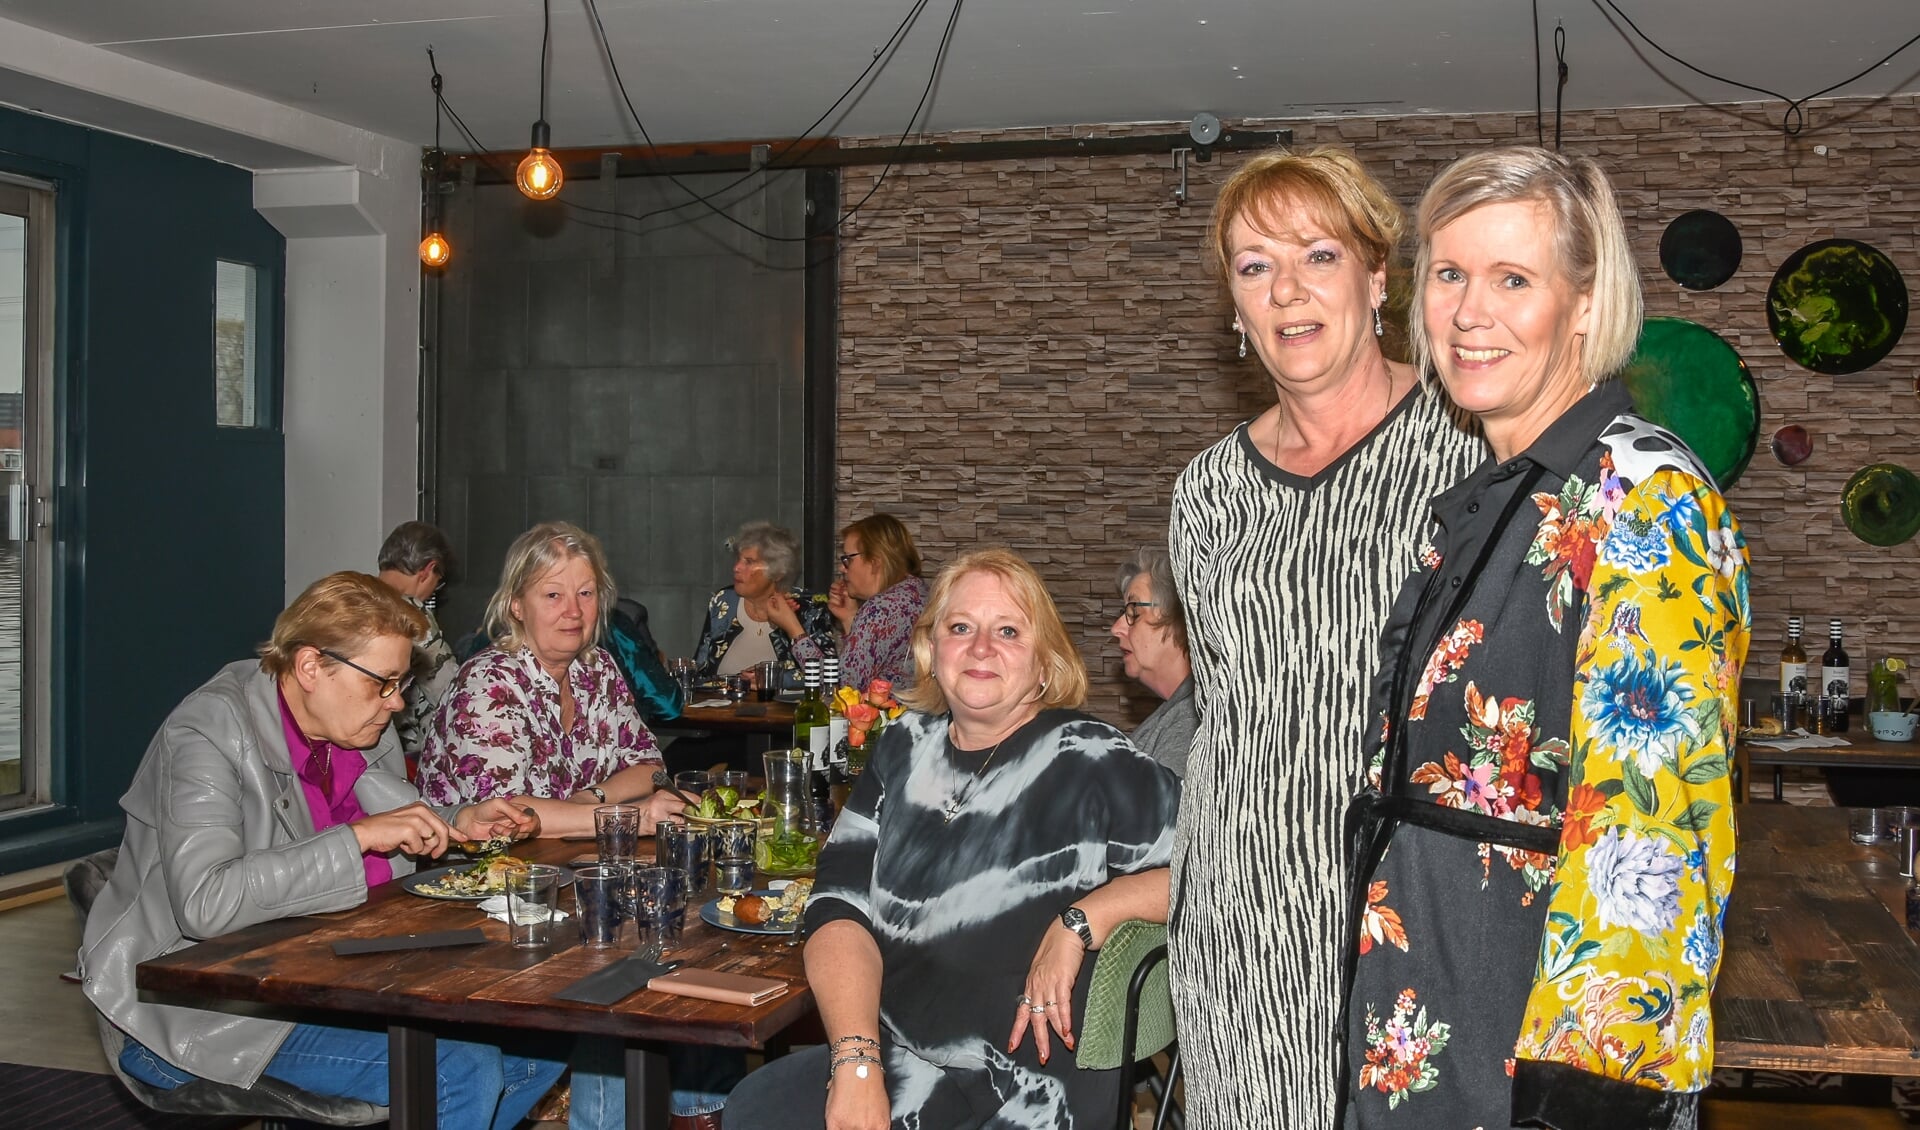 Rechts Renata Pen en links van haar Micky Biddlecombe van Mantelzorgers Onder elkaar (MOE), tijdens een diner voor Mantelzorgers.